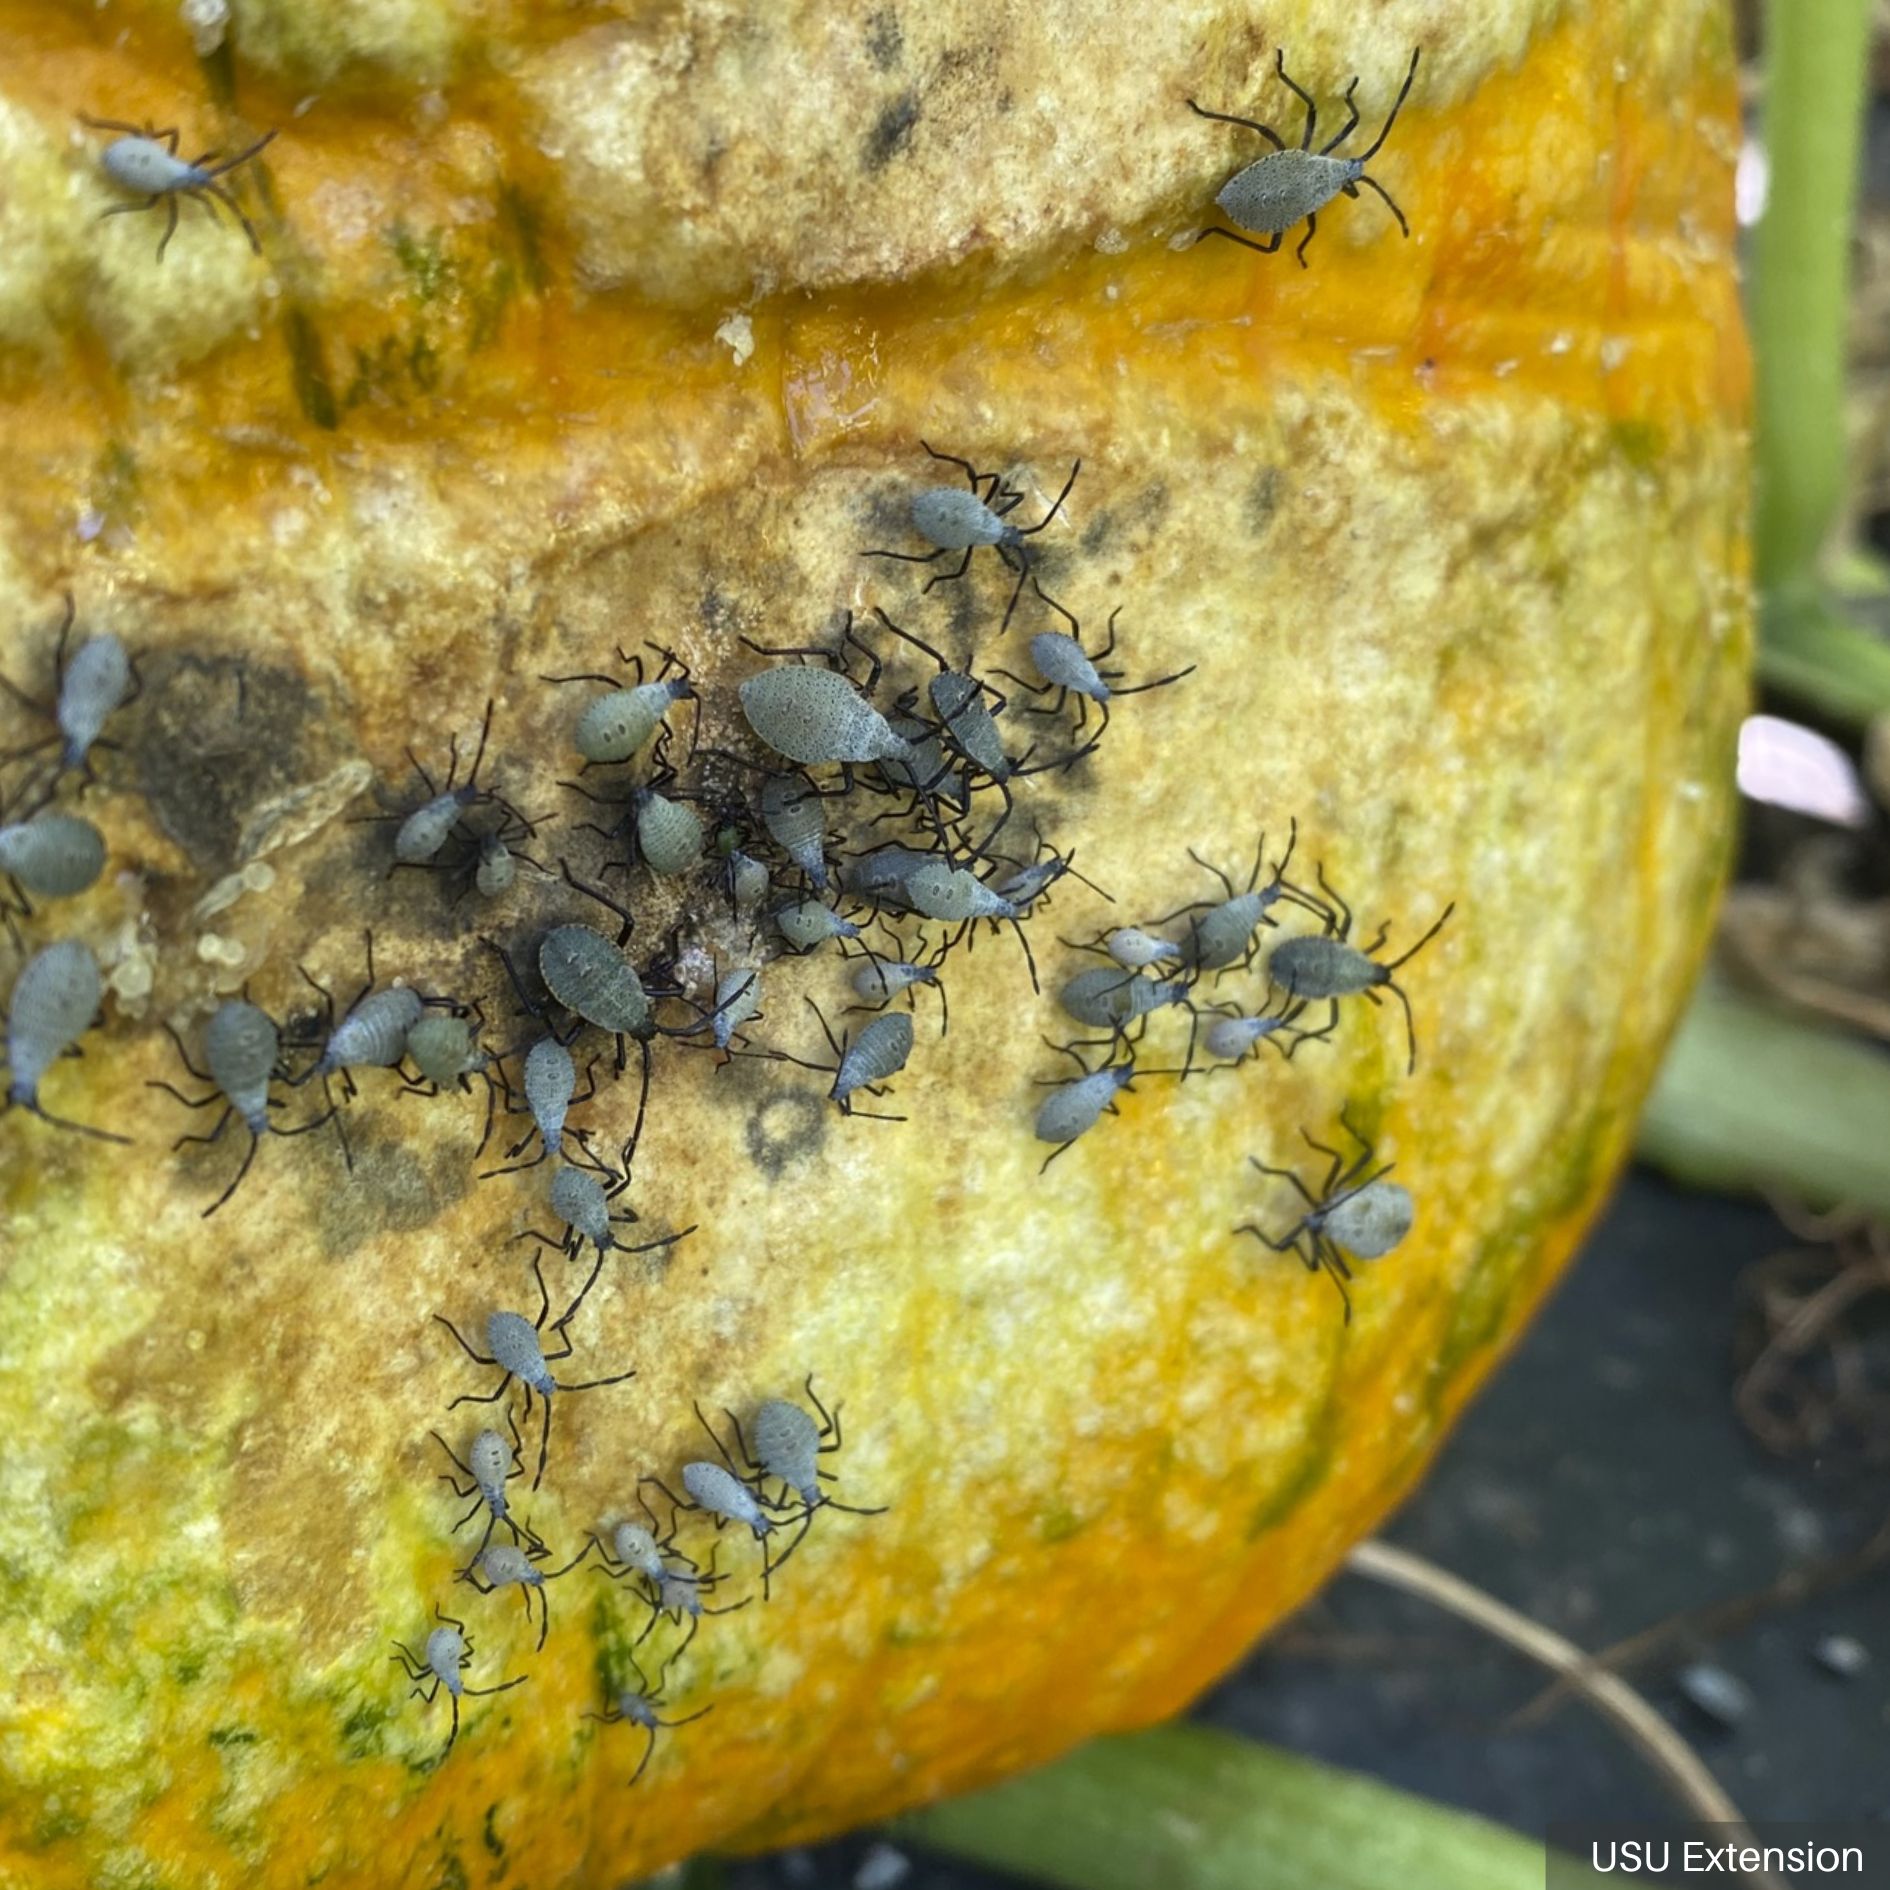 Squash Bug Nymphs Feeding on a Pumpkin